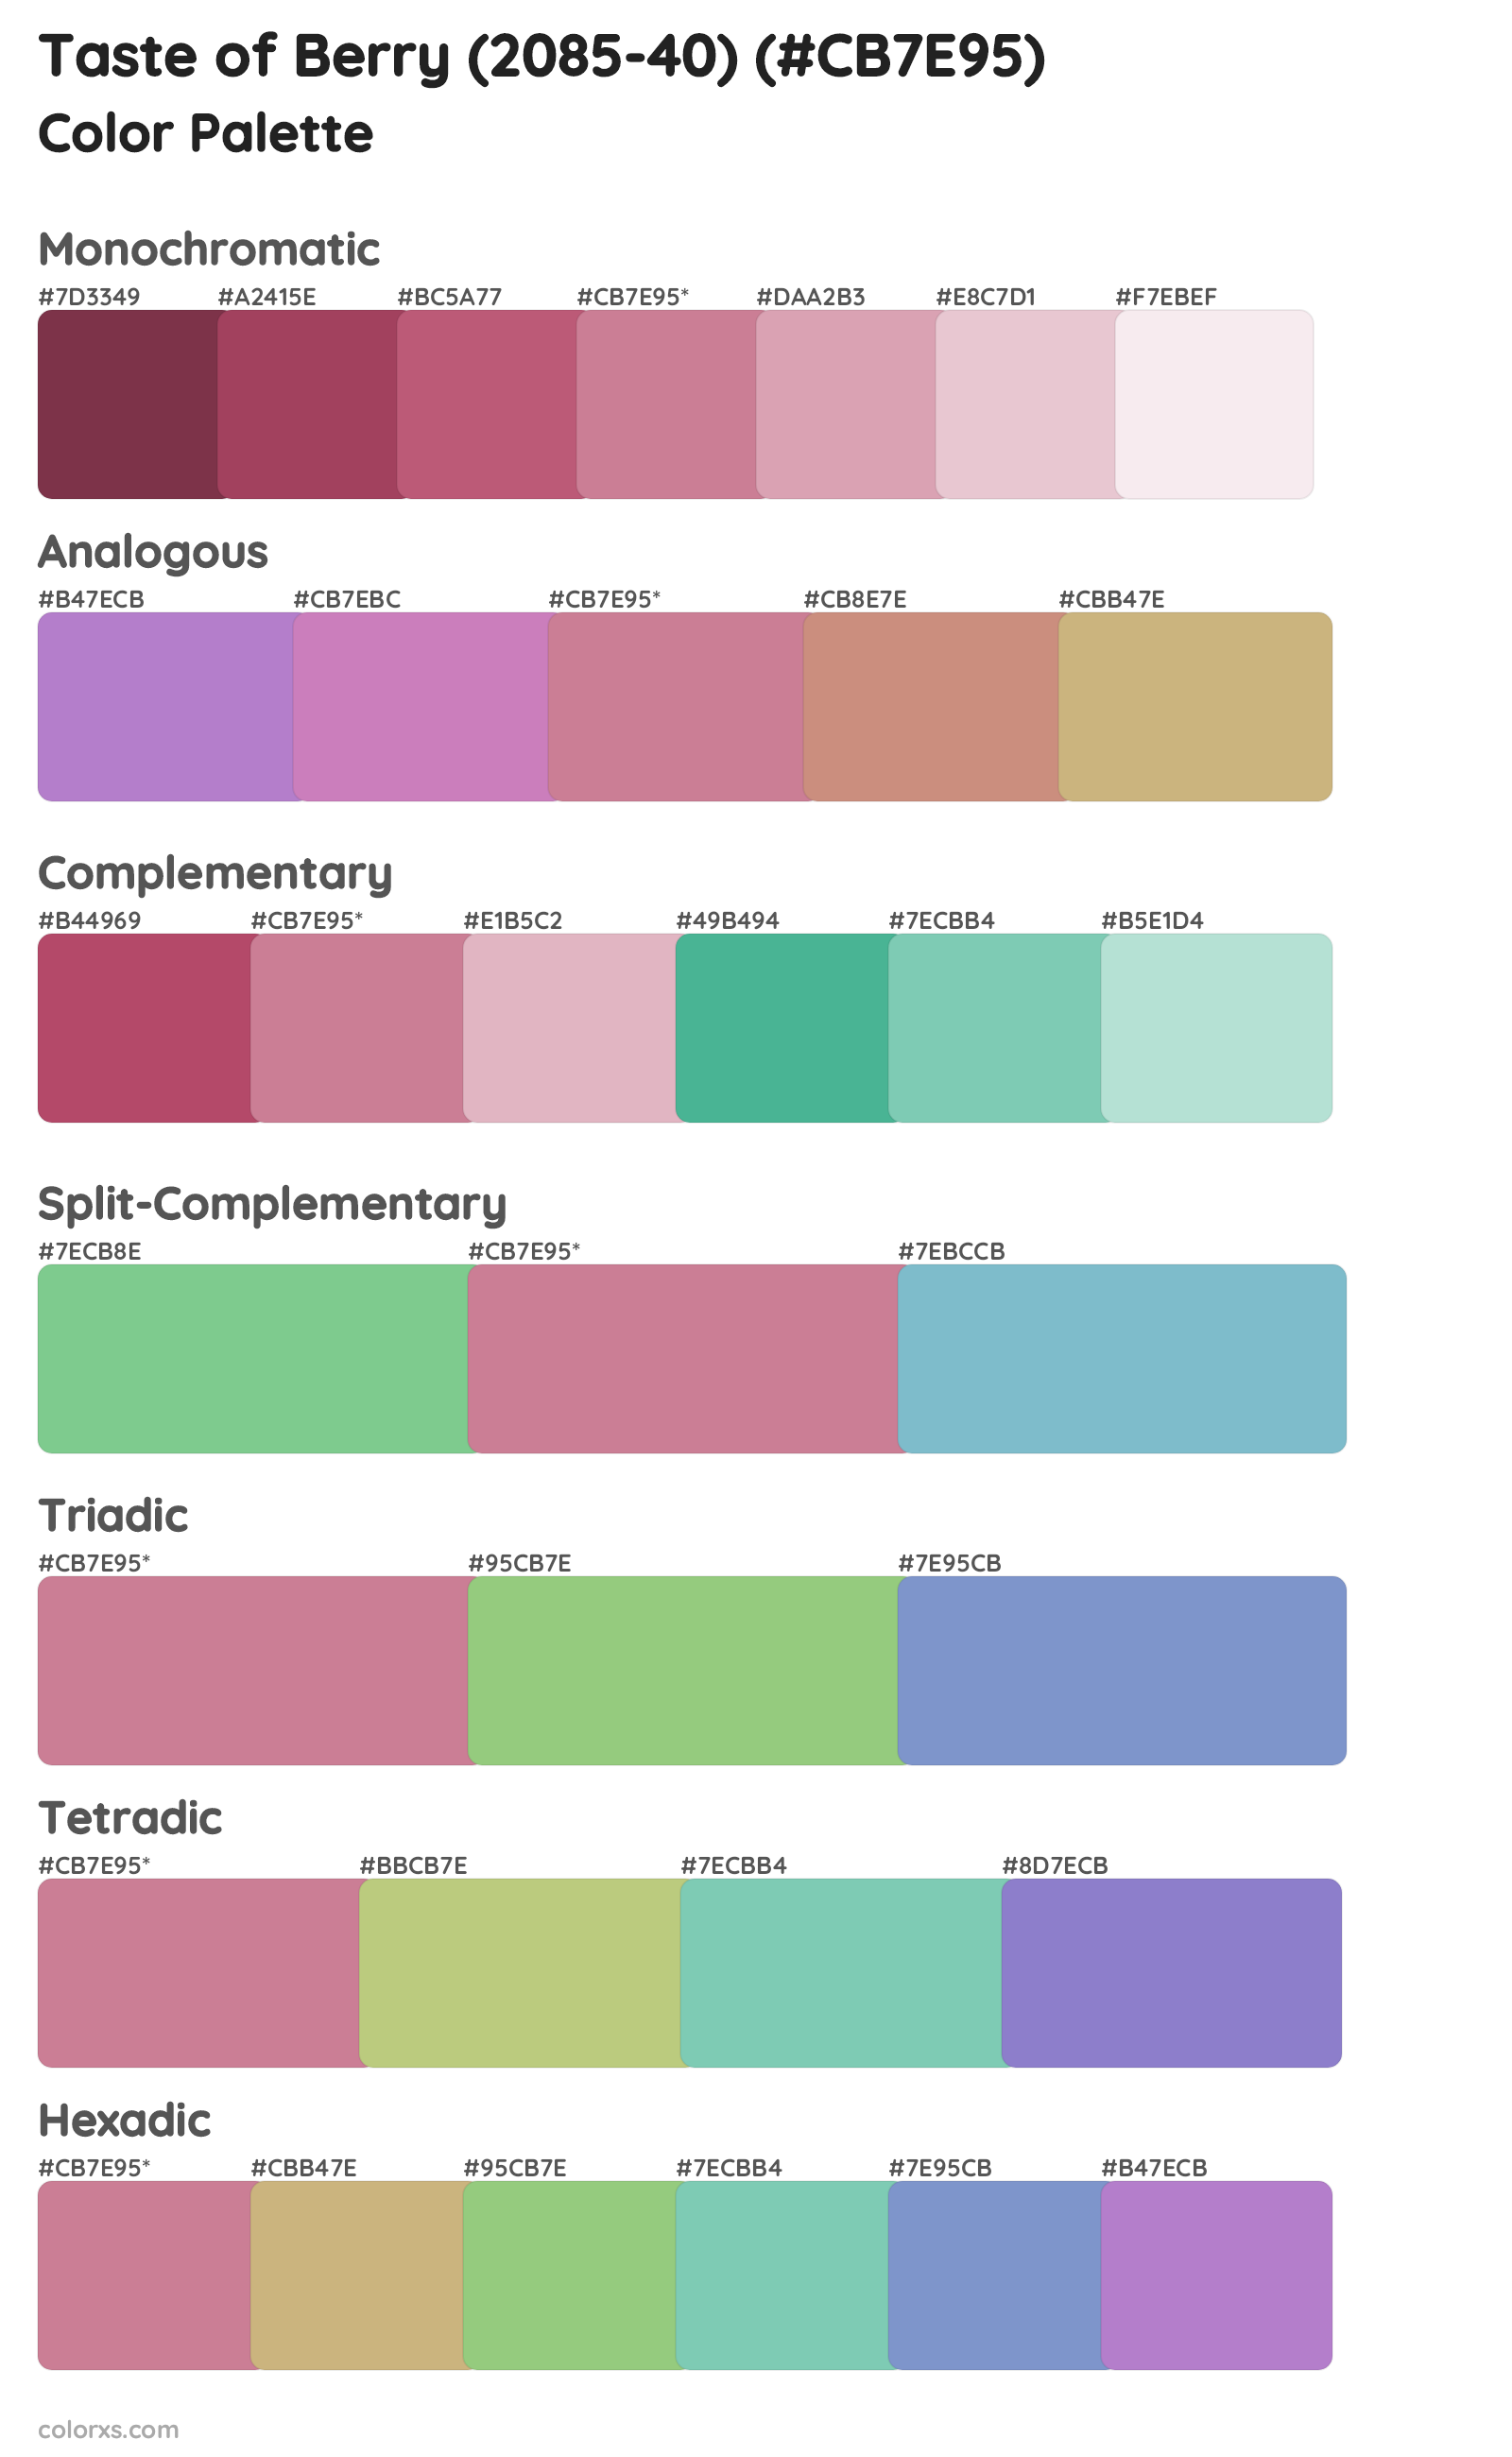 Taste of Berry (2085-40) Color Scheme Palettes